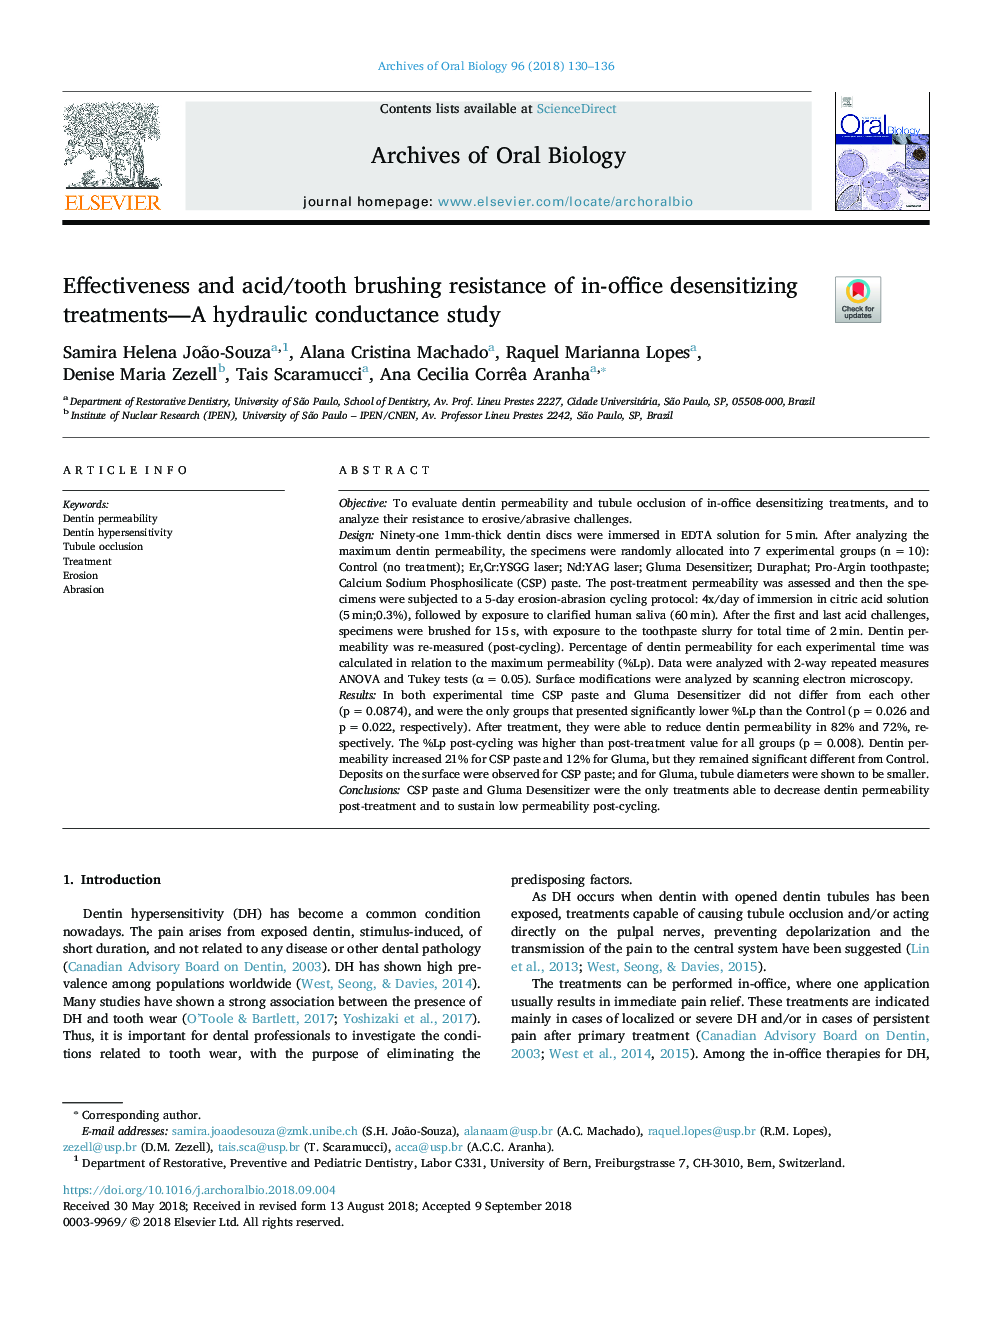 اثربخشی و مقاومت اسیدی / مسواک زدن دندان در درمان های غیر حساس به کار در دفتر - یک مطالعه هدایت هیدرولیکی